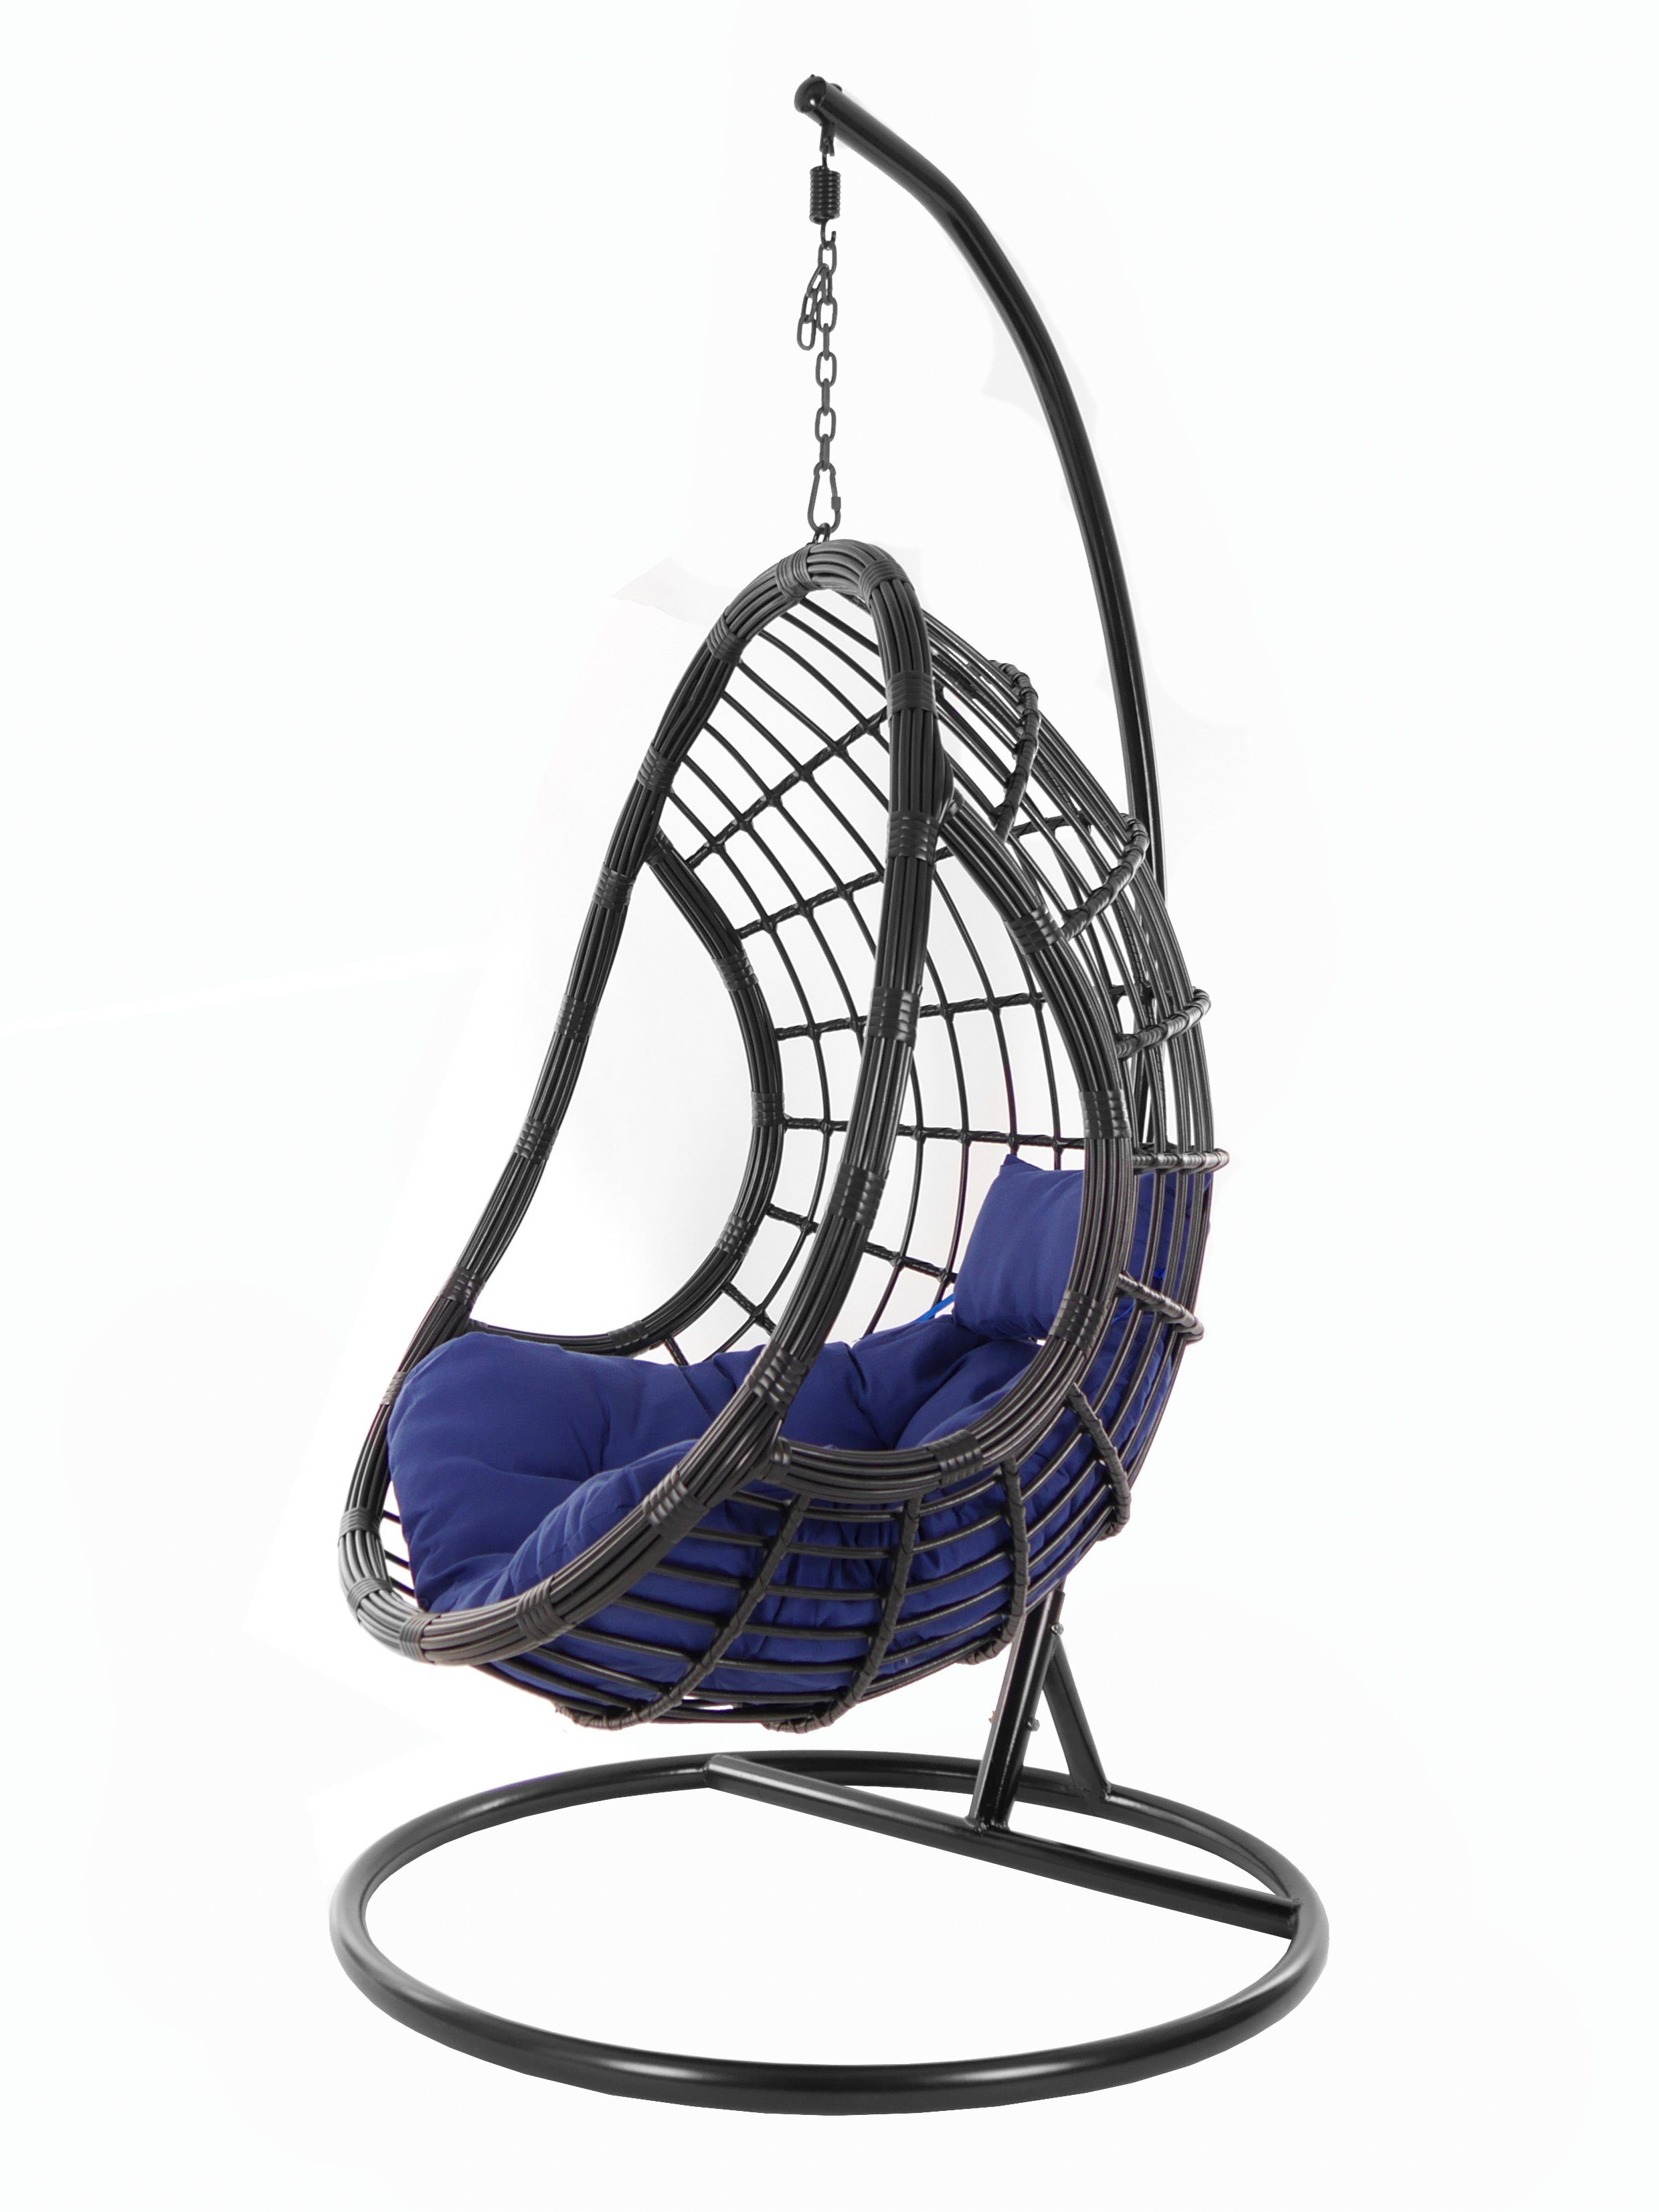 KIDEO Hängesessel PALMANOVA black, Swing Chair, schwarz, Loungemöbel, Hängesessel mit Gestell und Kissen, Schwebesessel, edles Design dunkelblau (5900 navy)